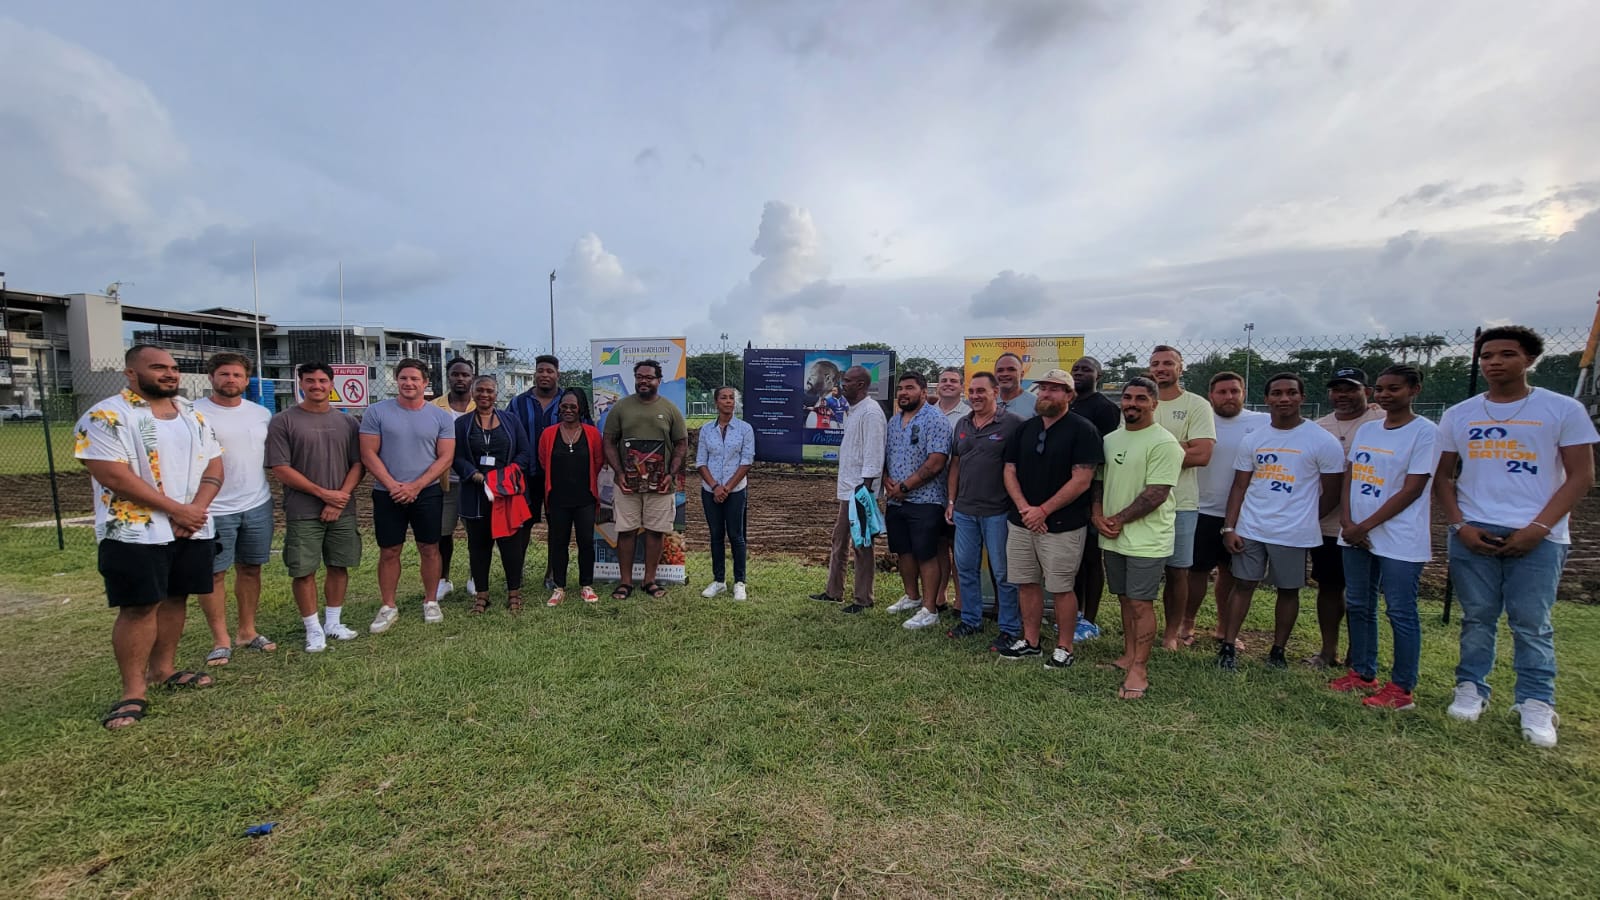     Le terrain de rugby du CREPS-Antilles Guyane baptisé au nom du joueur Mathieu Bastaraud 

